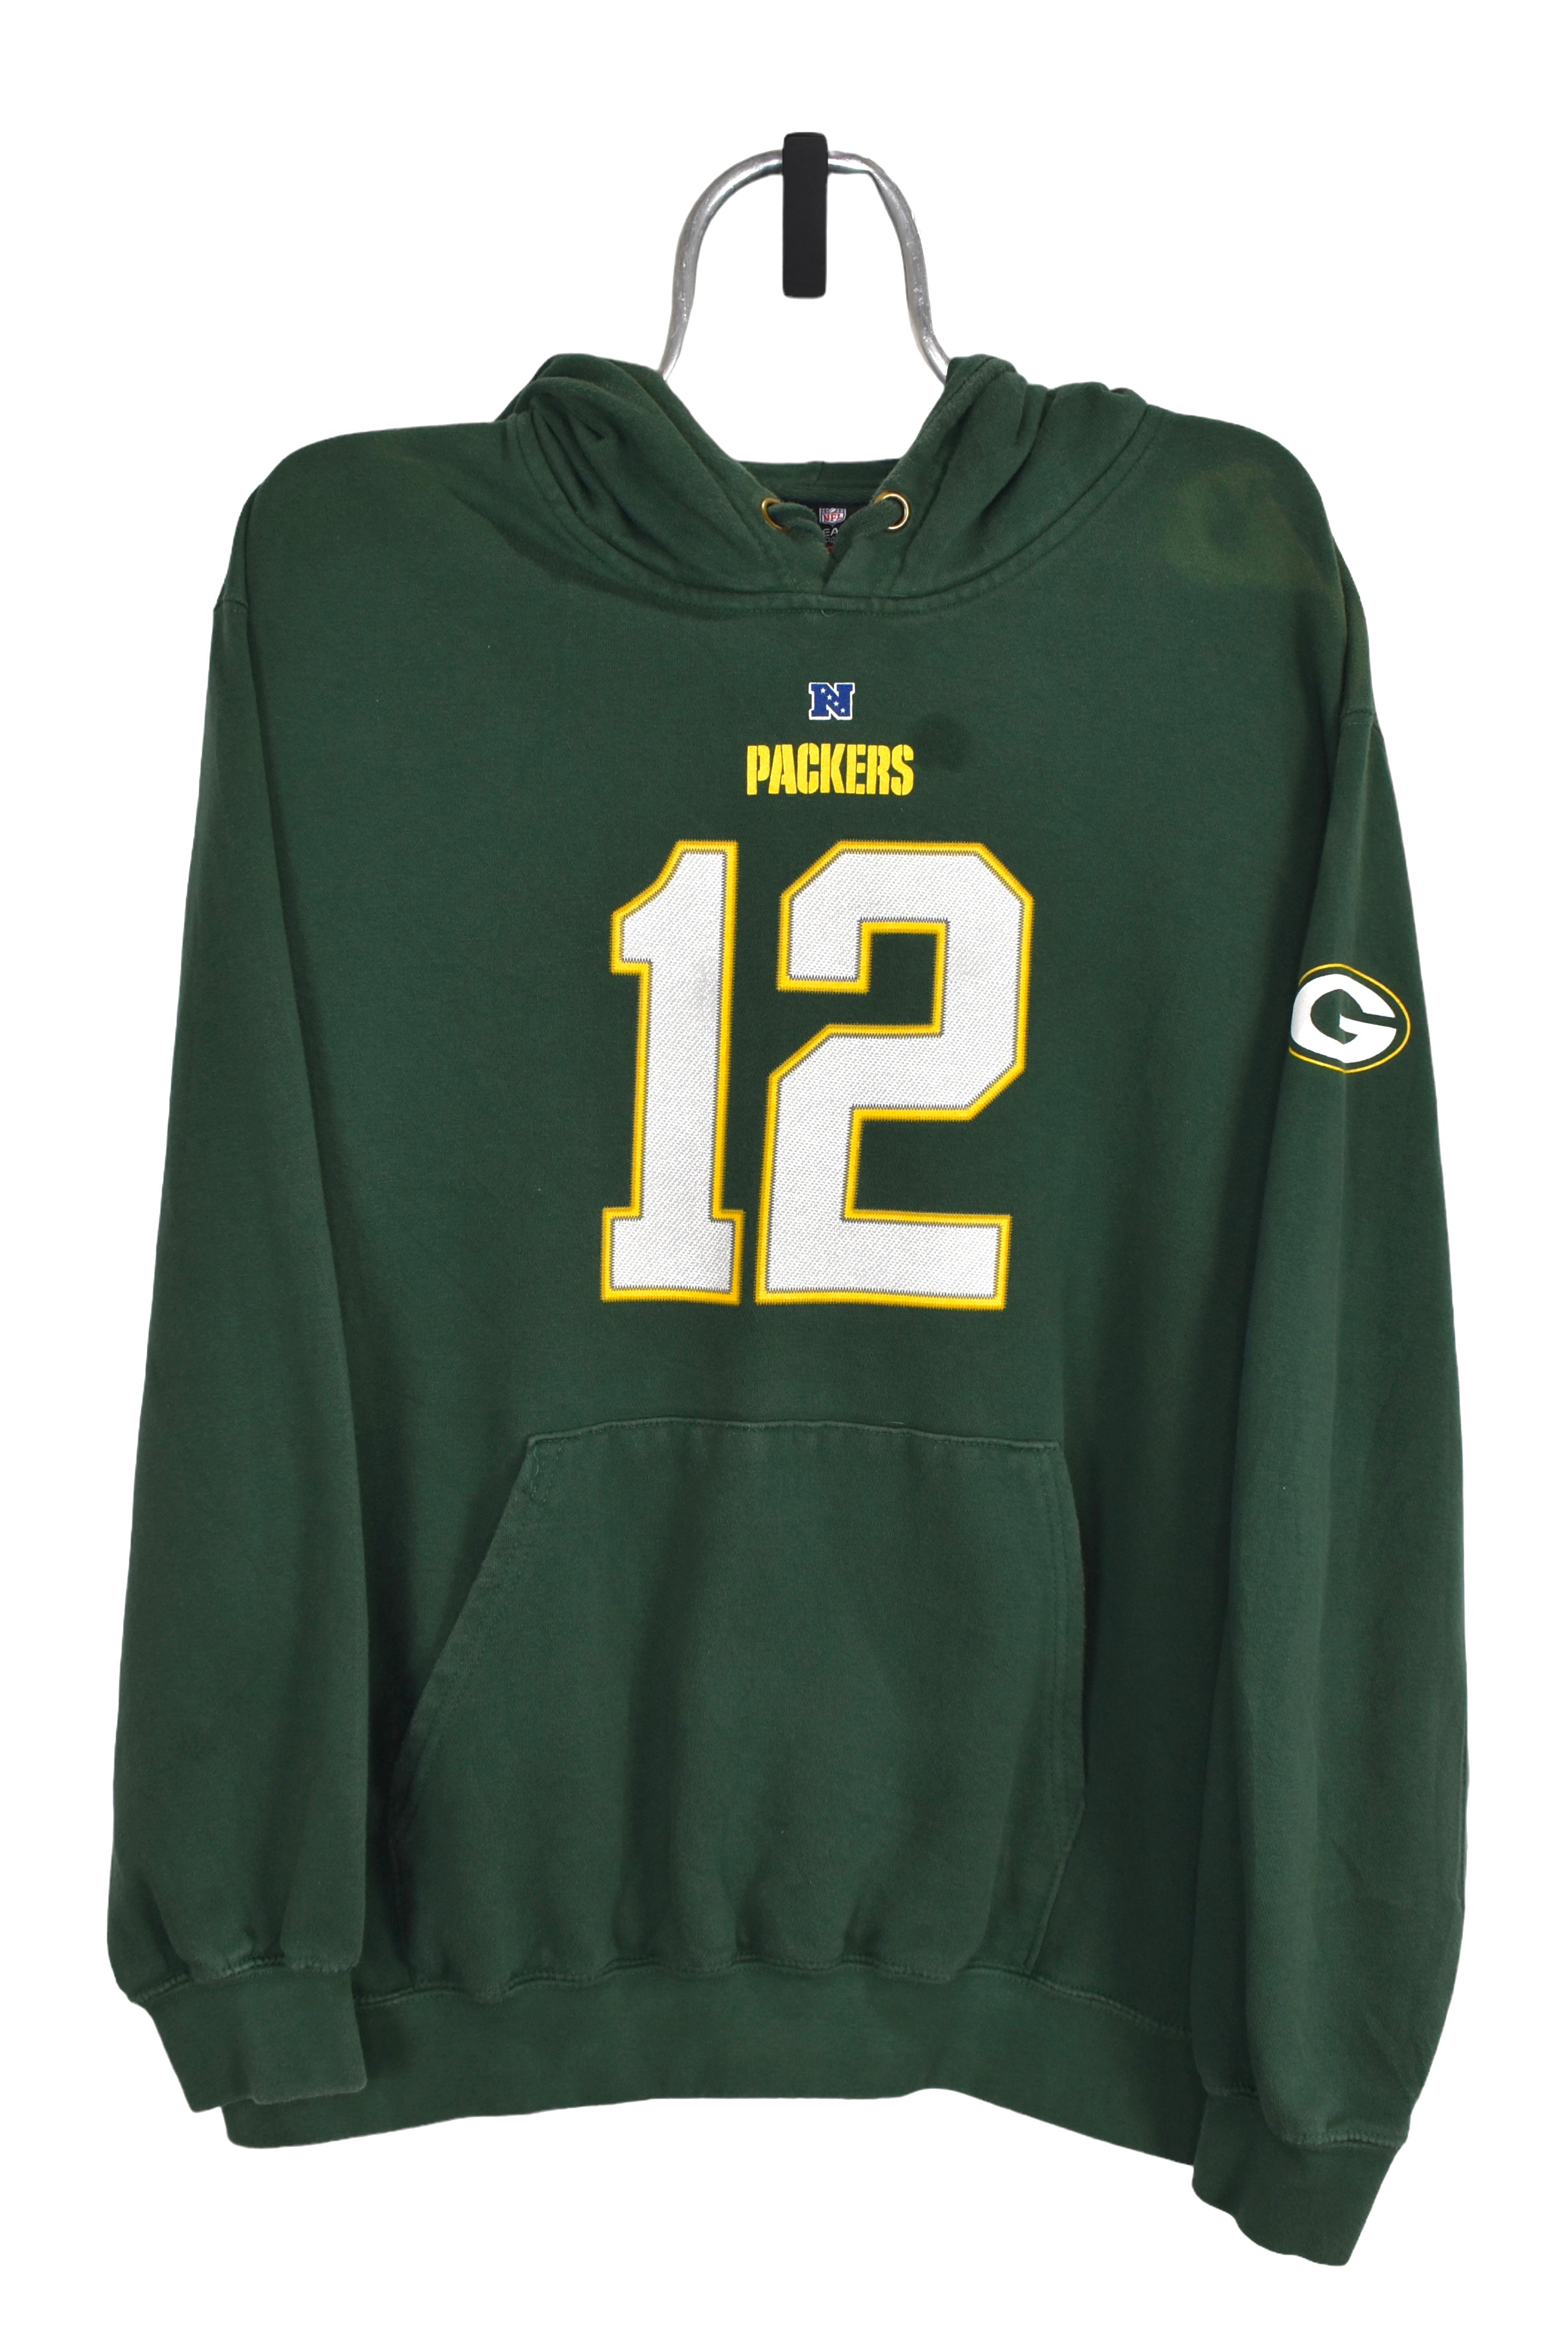 Vintage Green Bay Packers hoodie (XL), green NFL graphic sweatshirt